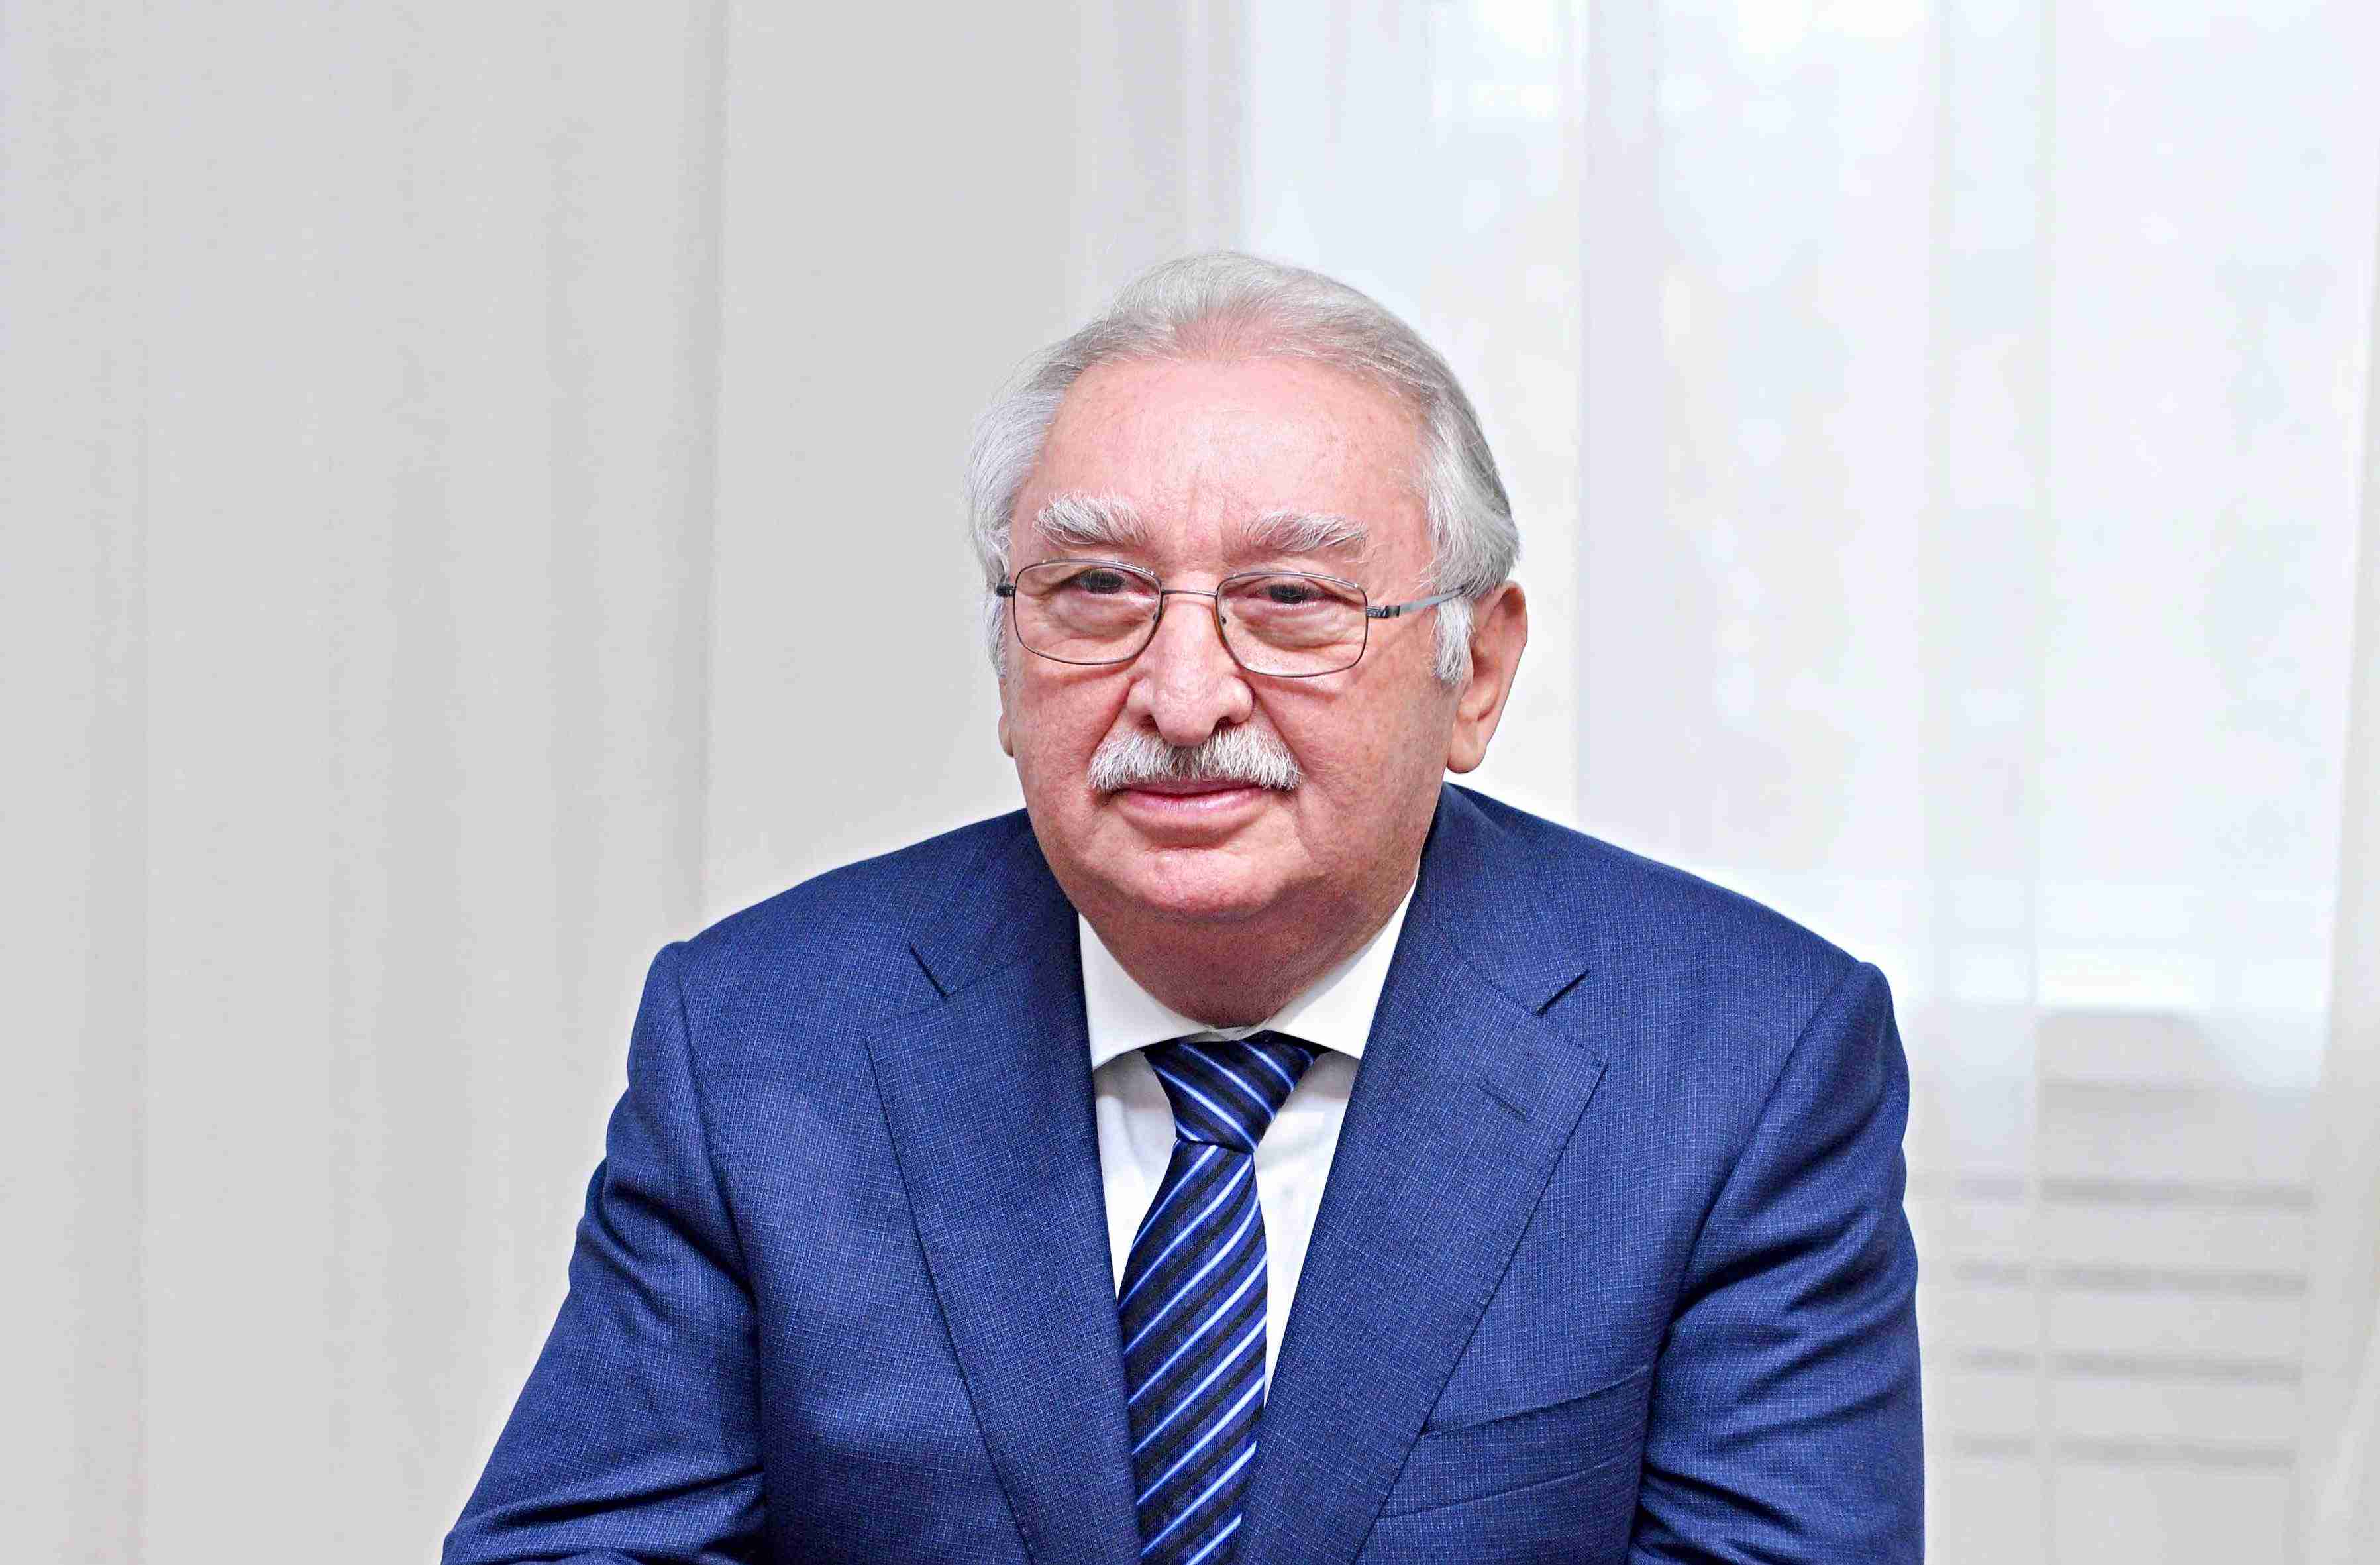 Сегодня день рождения основателя Университета Одлар Юрду, ректора, уважаемого профессора Ахмета Велиева!